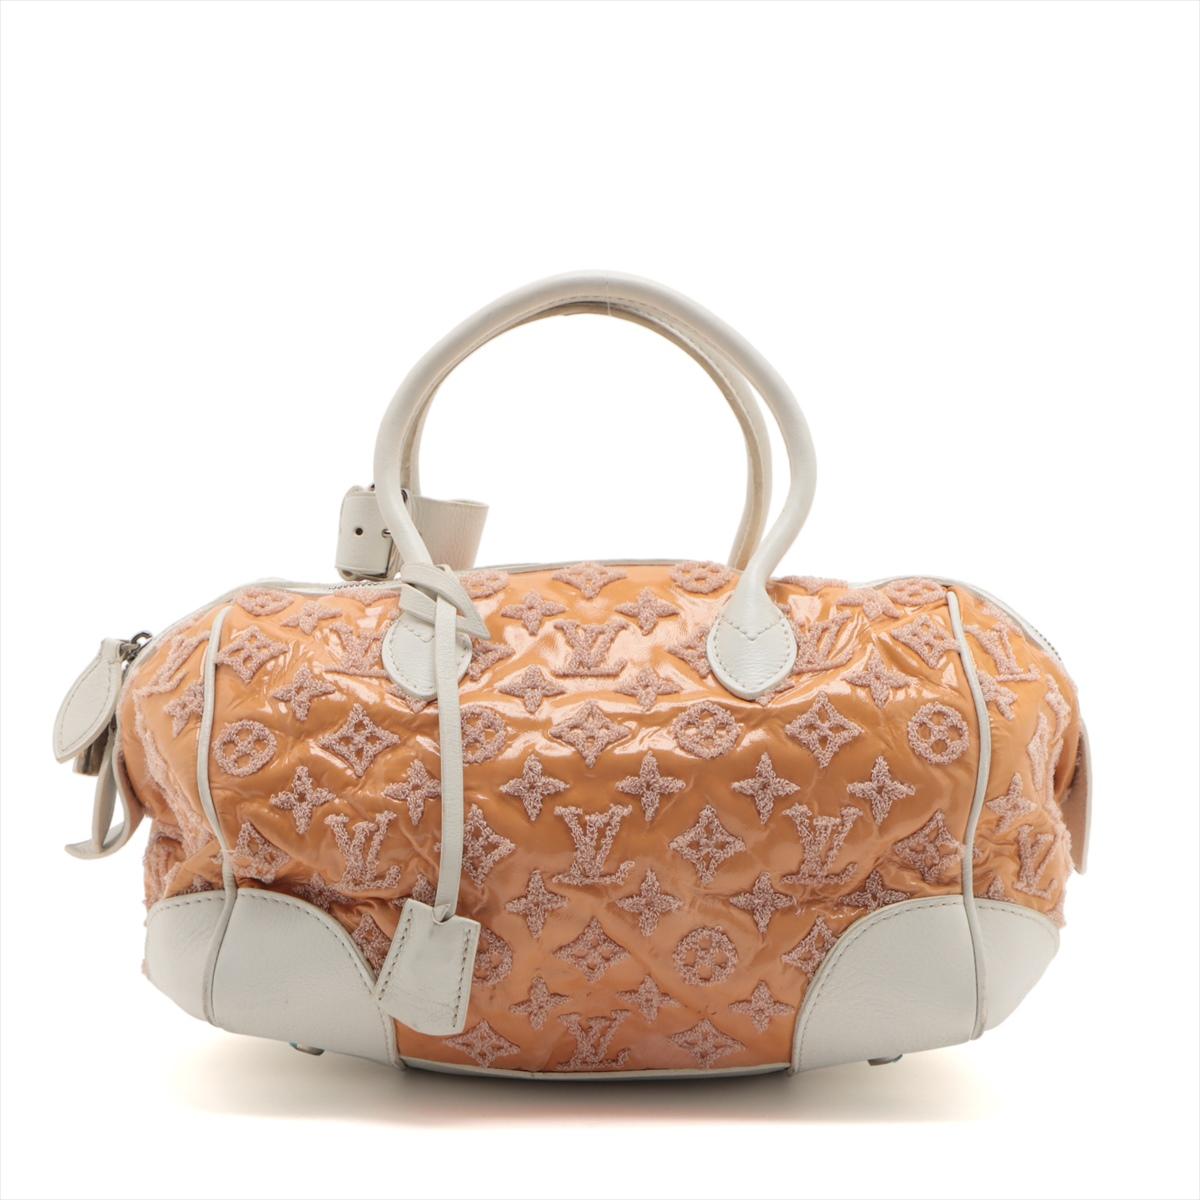 Le sac Monogram Bouclettes Speedy Round de Louis Vuitton en or rose x Whiting est un accessoire luxueux et stylé qui respire l'élégance. Confectionné dans la toile Monogram emblématique de la marque, avec une texture unique de bouclettes, ce sac